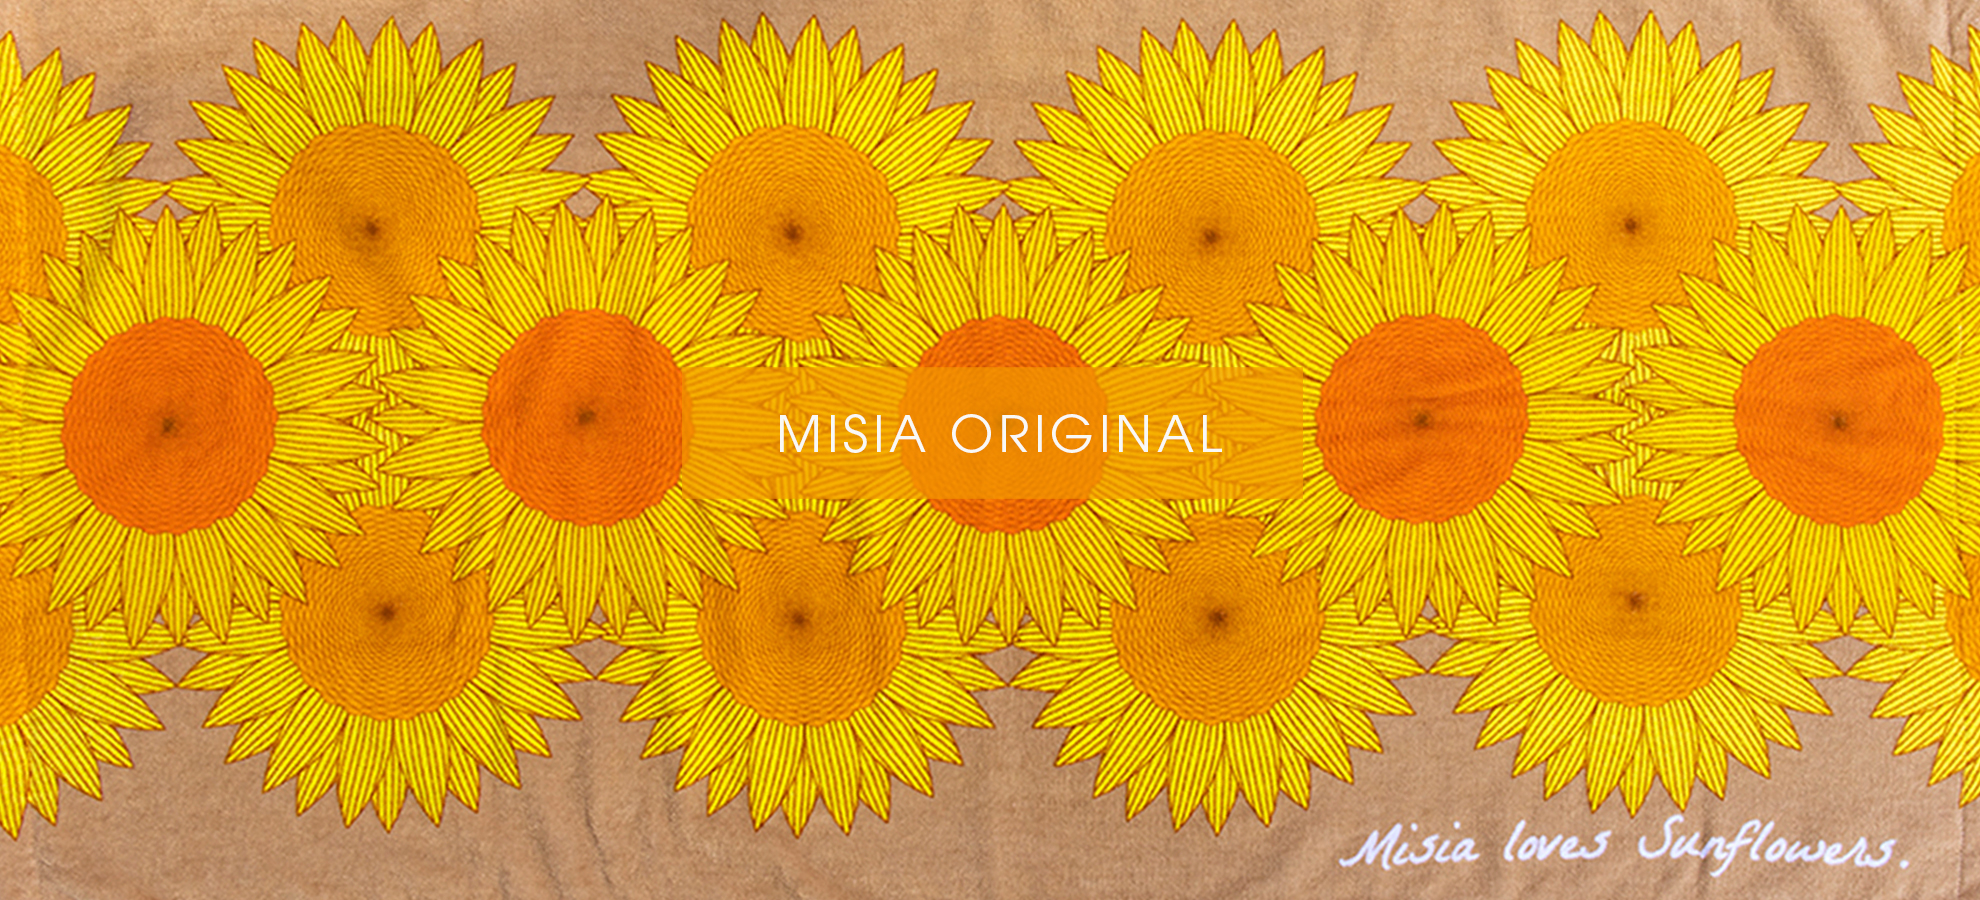 MISIA-ORIGINAL-Banner02